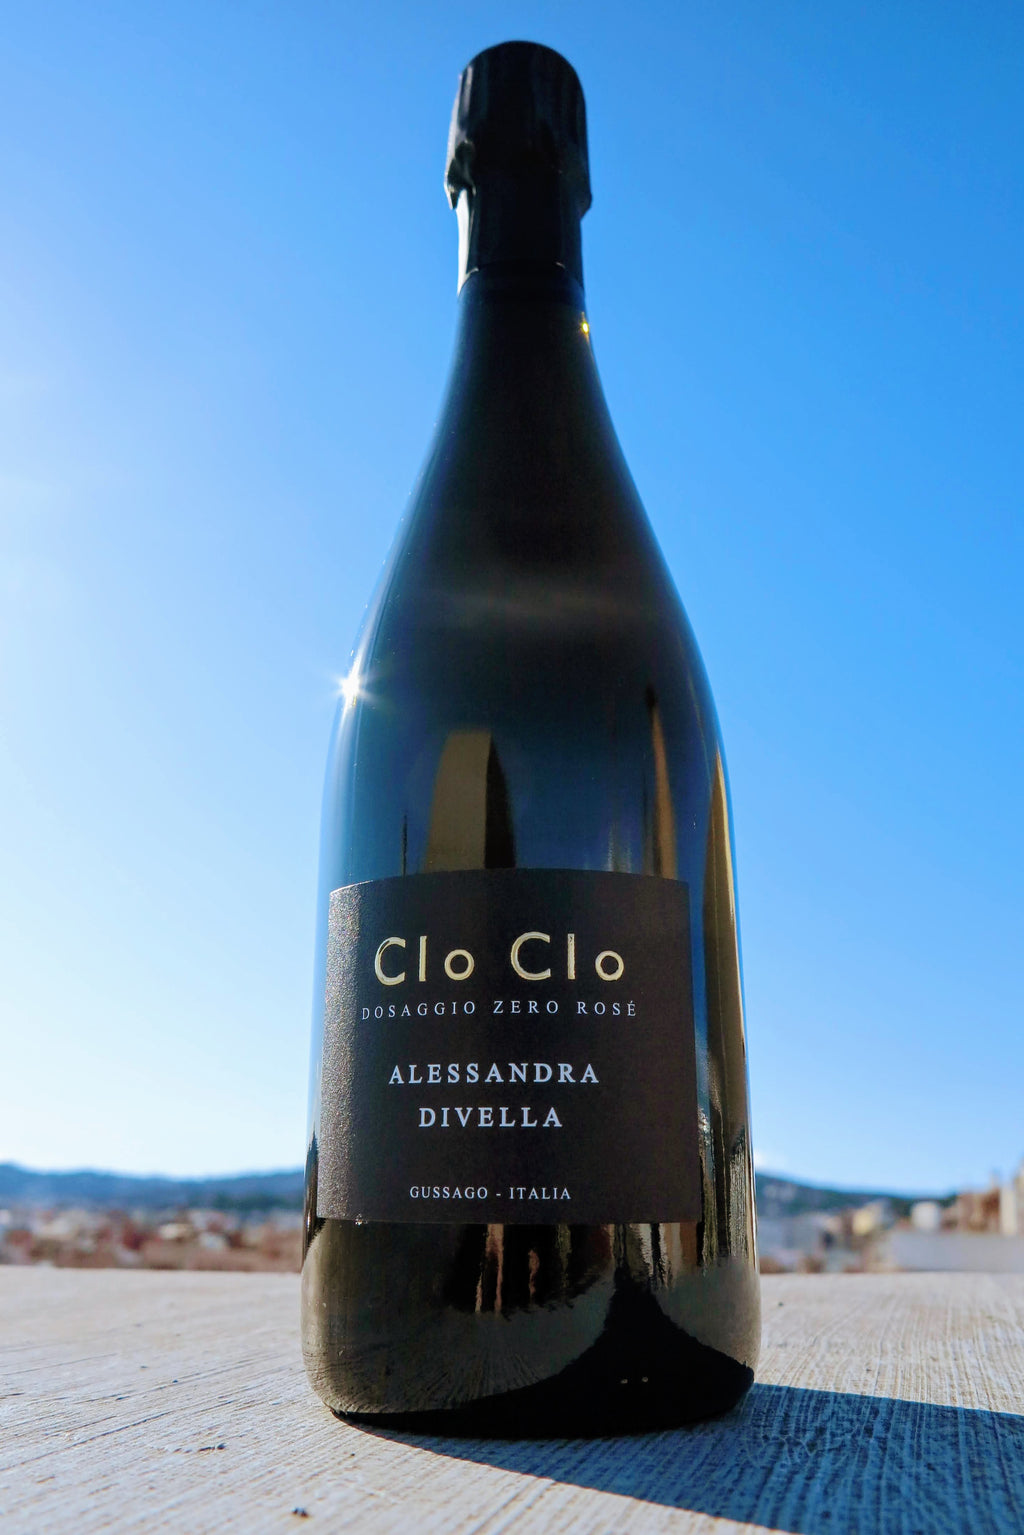 Alessandra Divella - Clo Clo no dosificado Rosado - 100% Pinot Noir